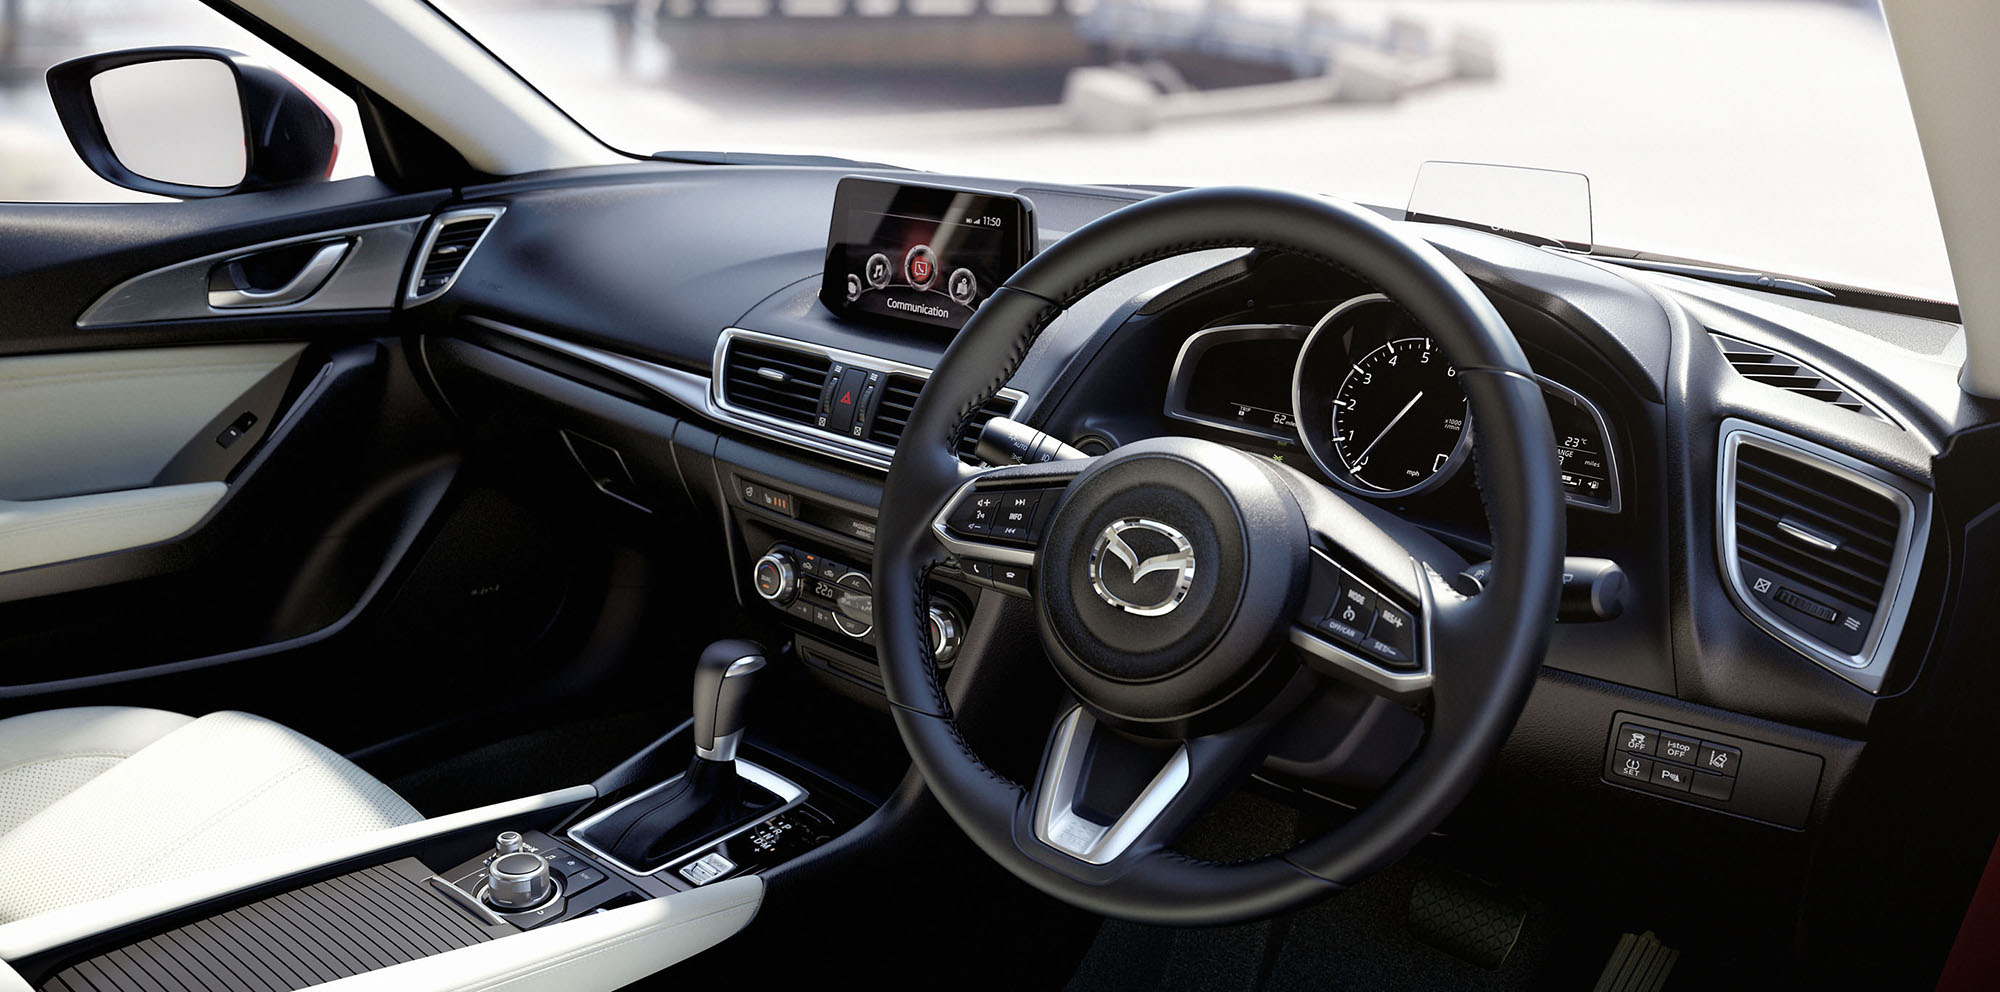 2017 Mazda3 Interior Forcegt Com